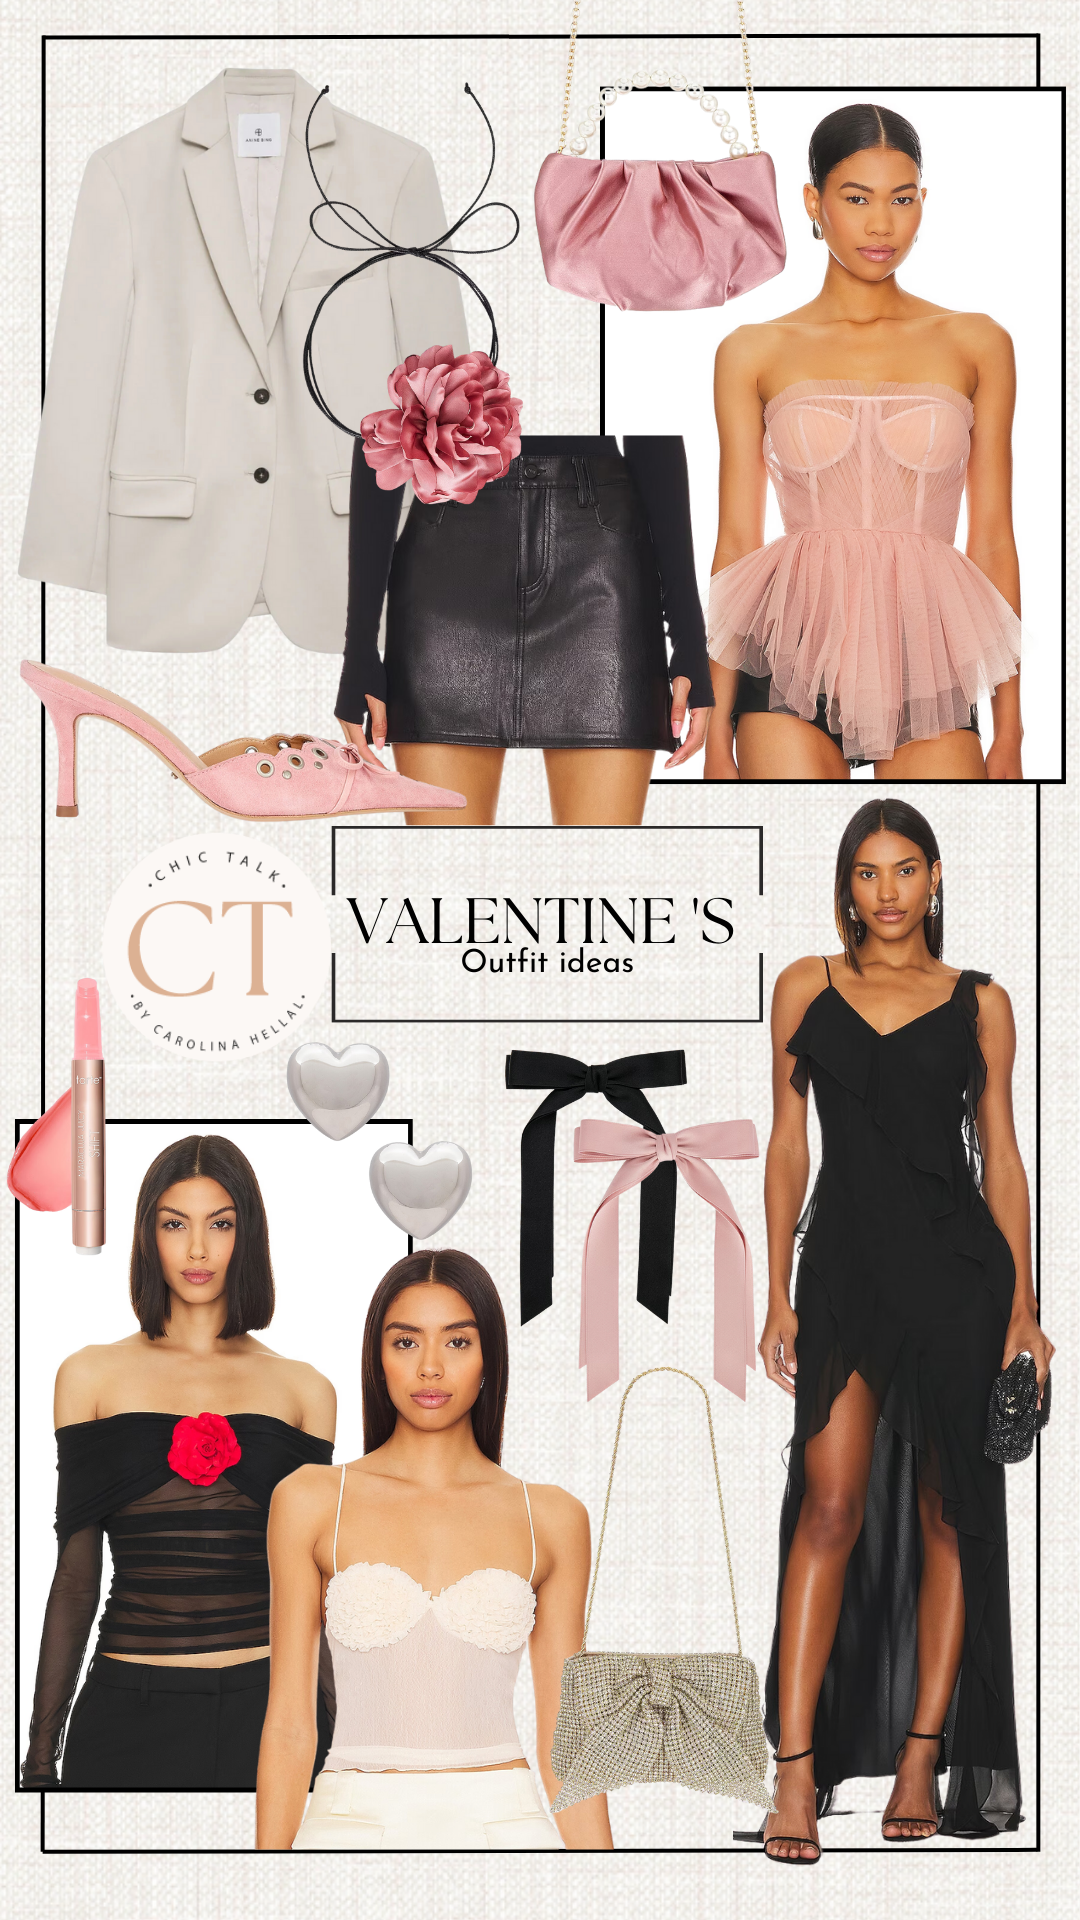 Valentine's outfit ideas via Revolve.